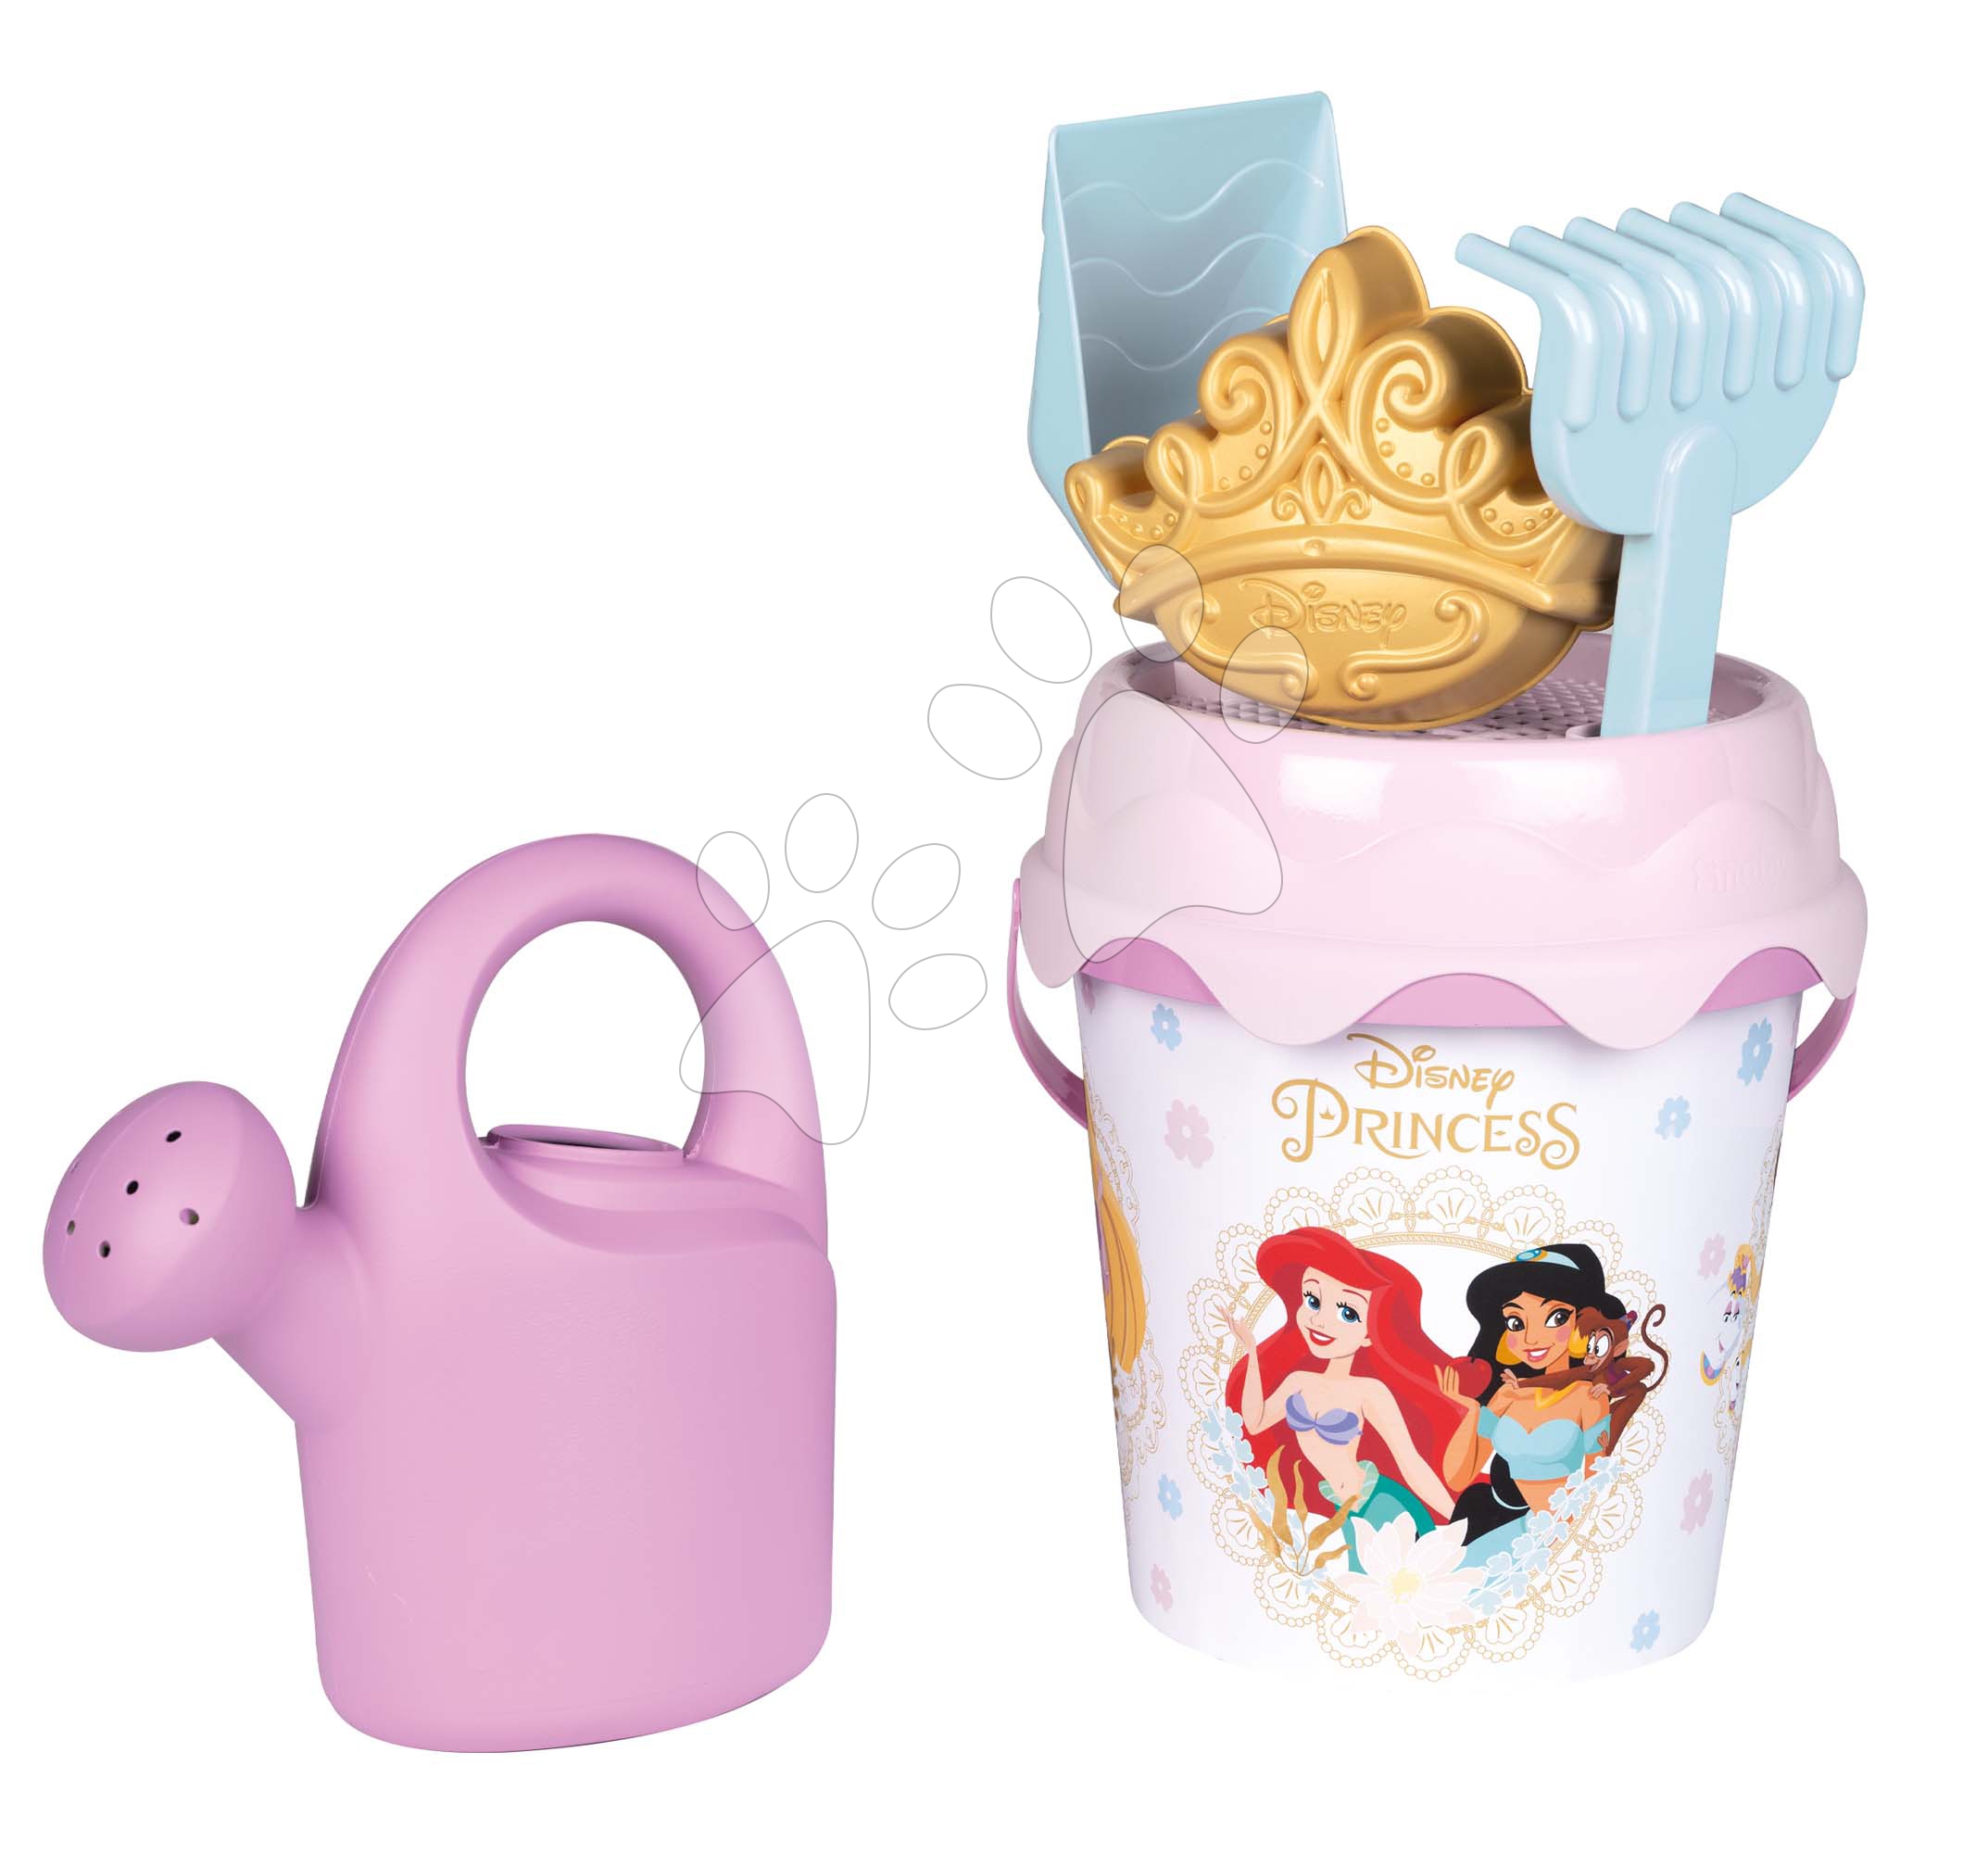 Vödör szett Disney Princess Garnished Bucket Box Smoby locsolókannával 17 cm magas 18 hó-tól gyerek játék webáruház - játék rendelés online Kerti játékok  | Homokozó játékok | Homokozó vödrök